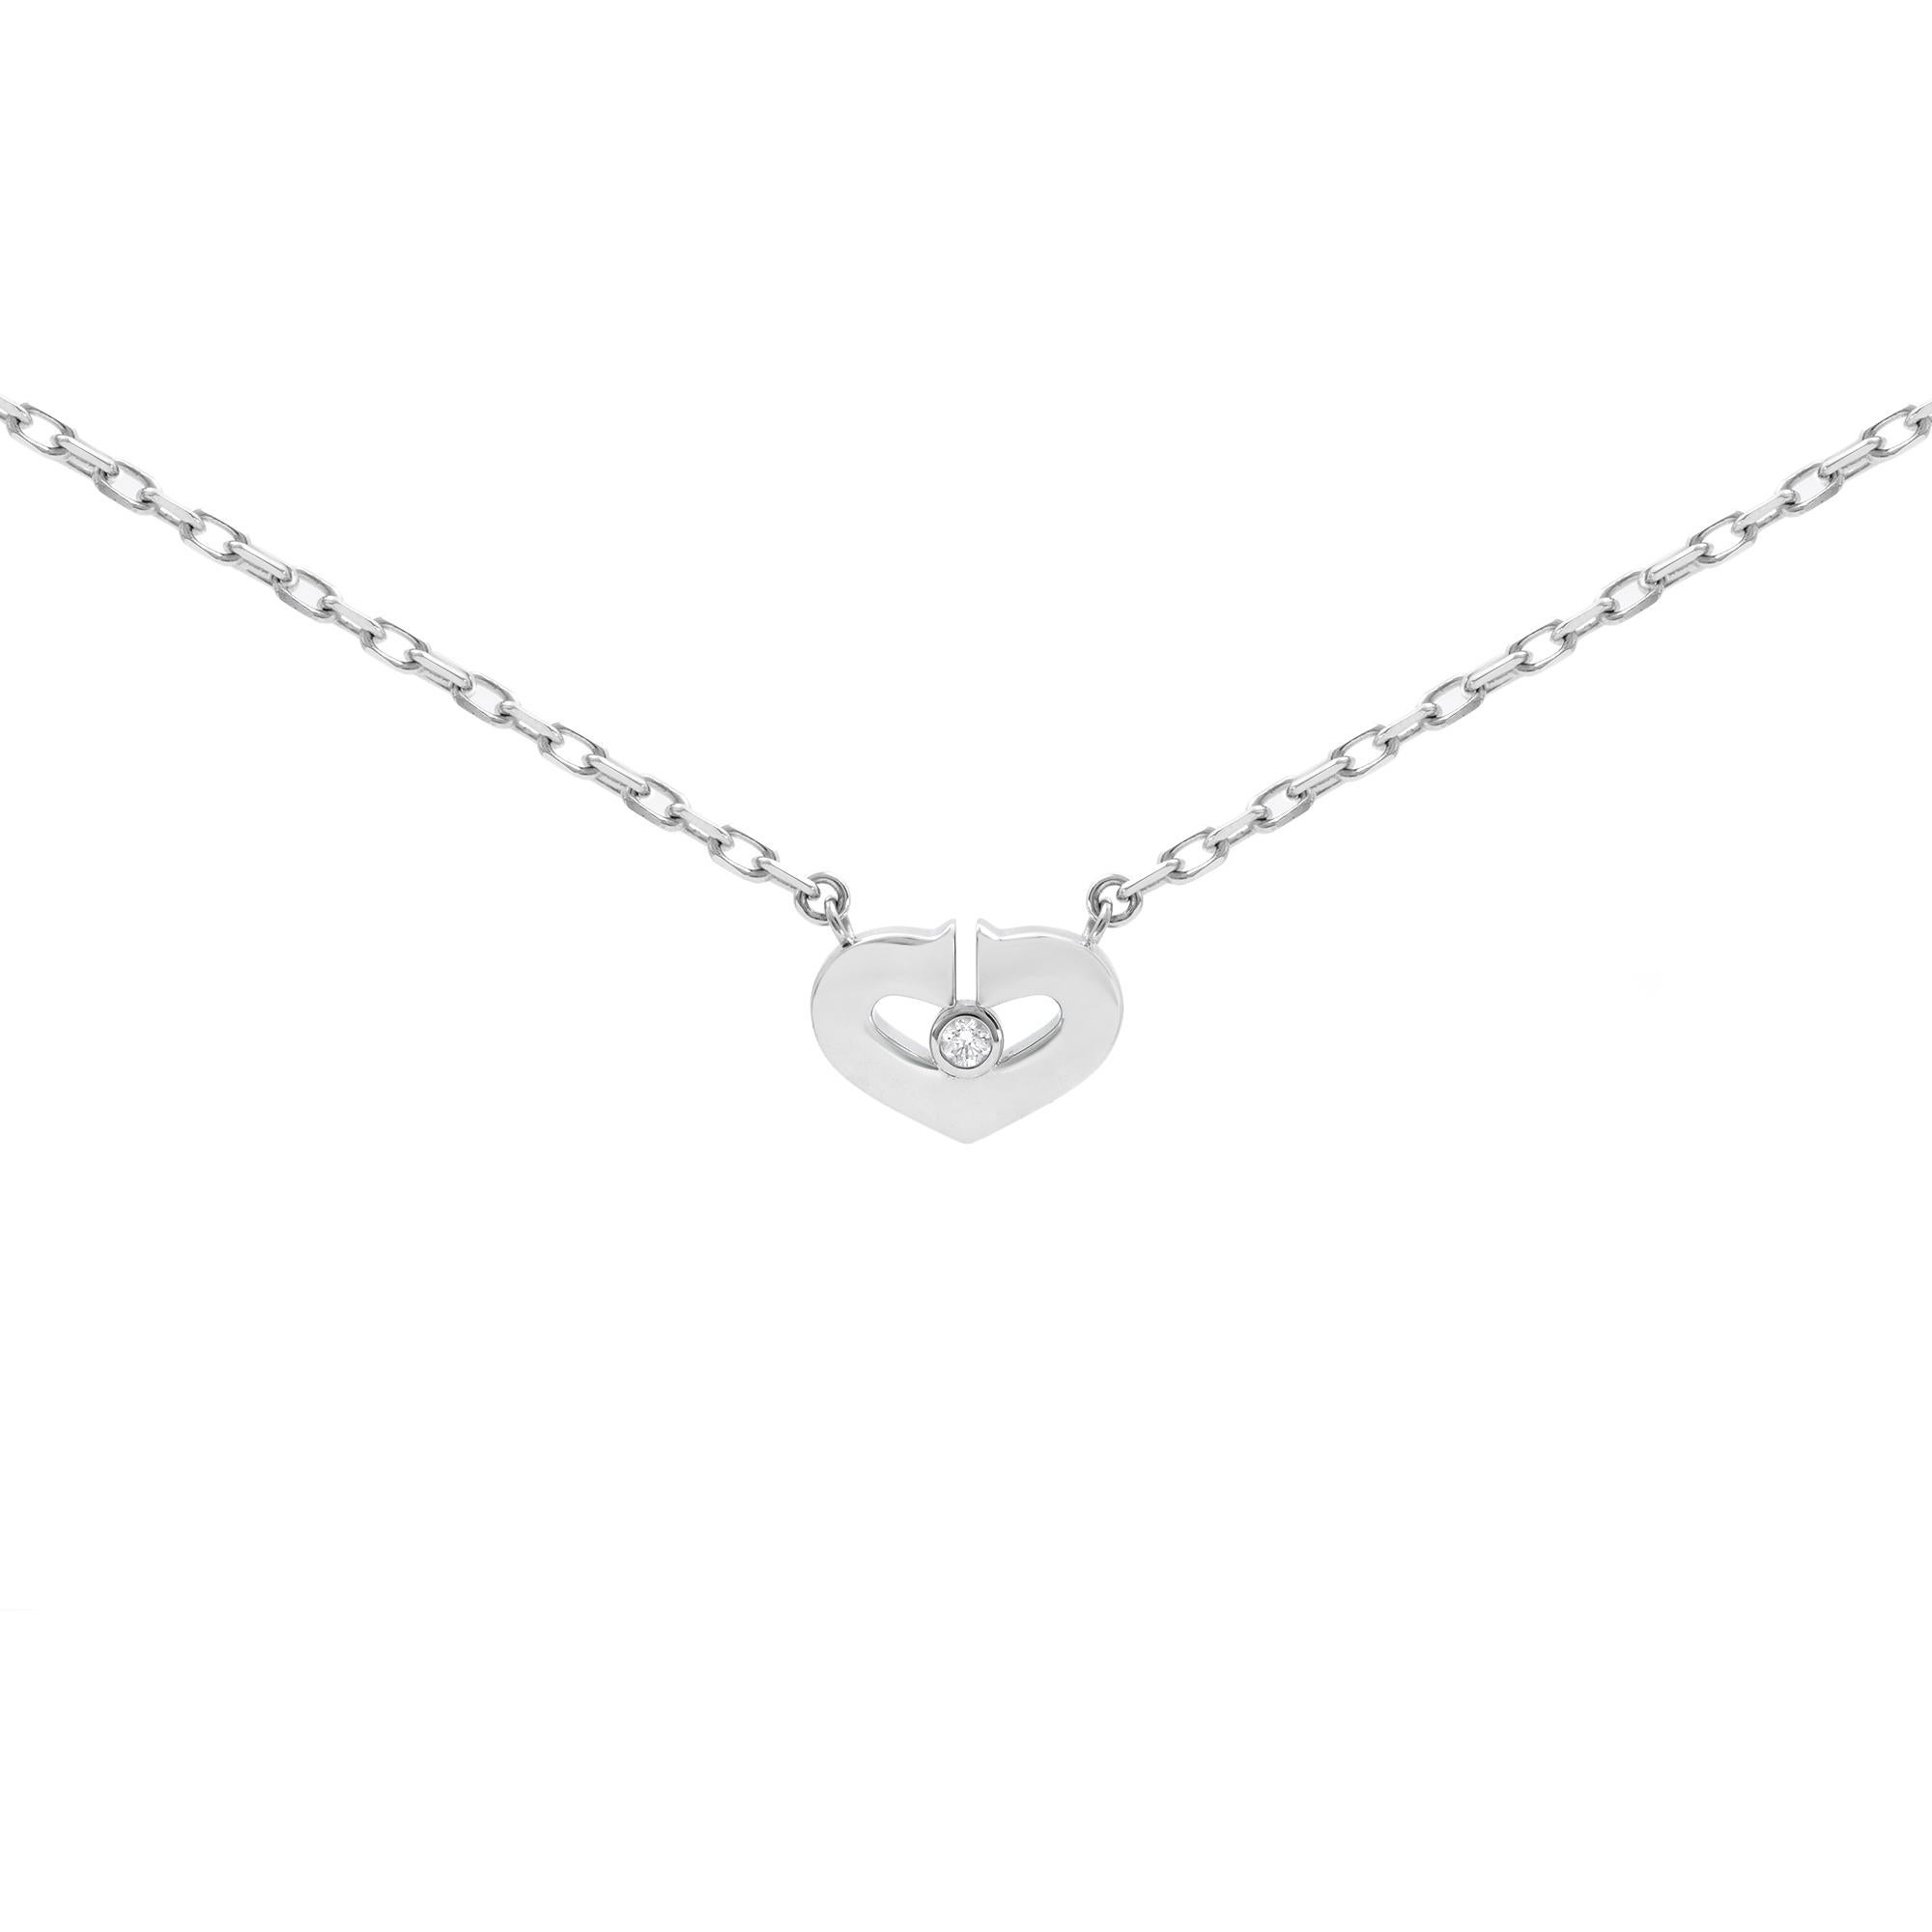 Women's or Men's Cartier C Heart Diamond Pendant Necklace 18k White Gold 0.02cttw